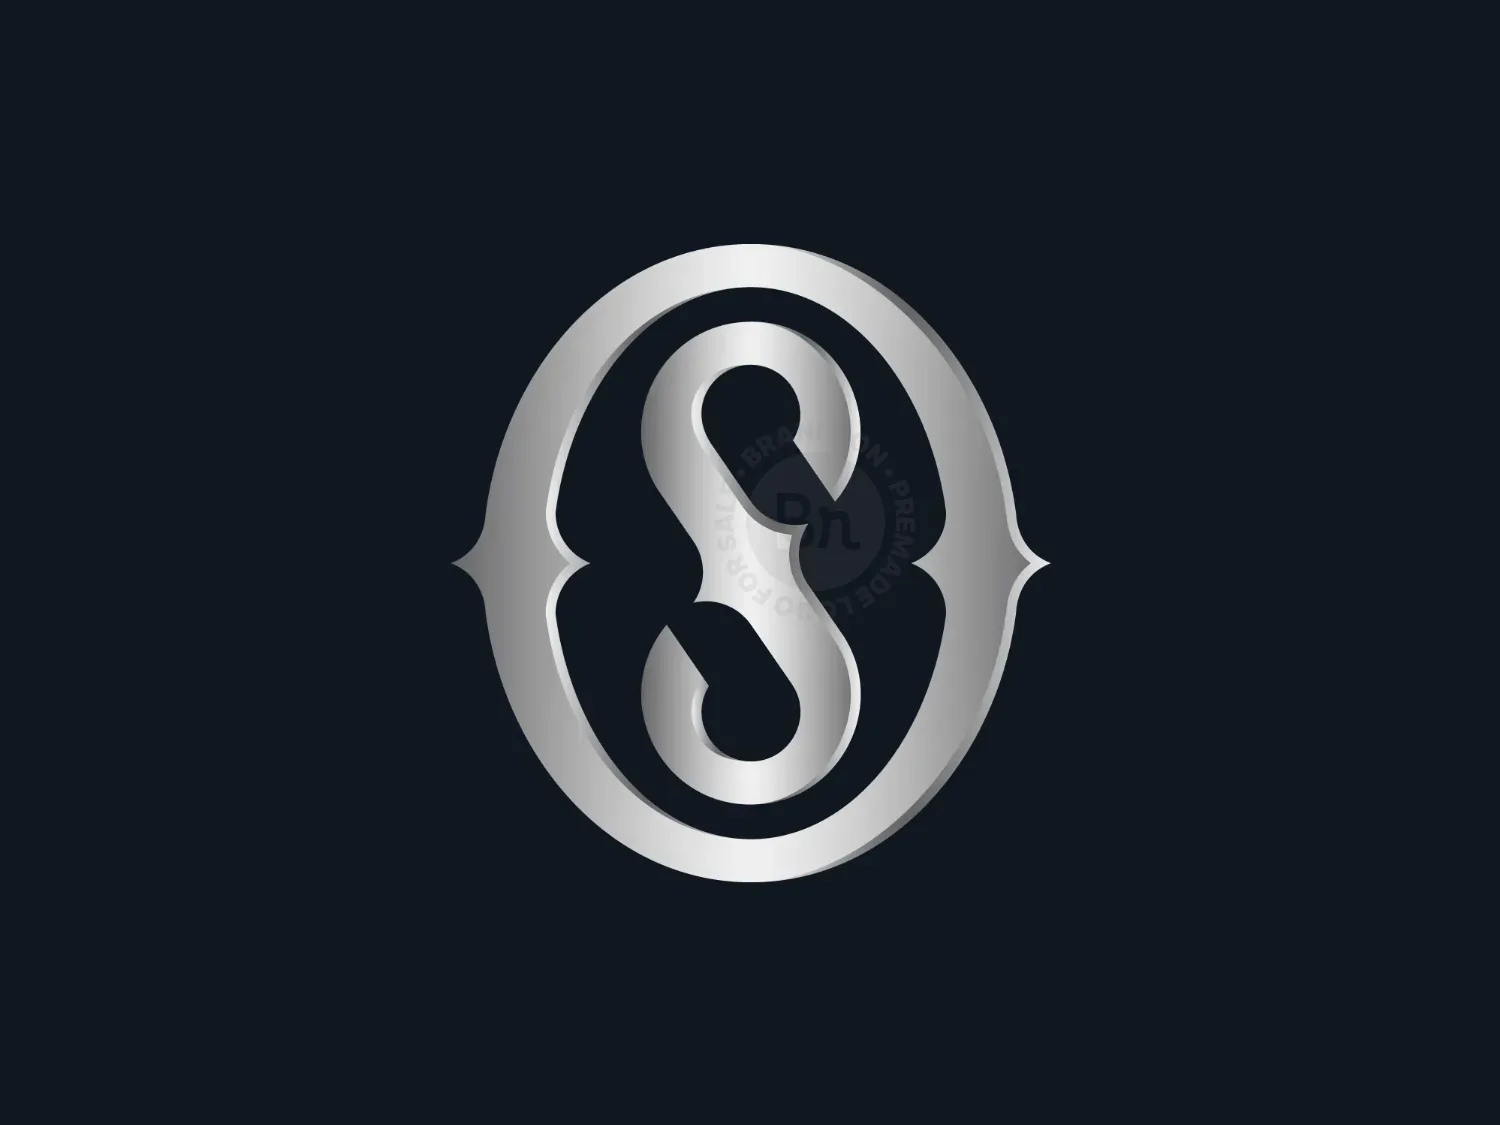 Os o s letter design logo logotype concept Vector Image